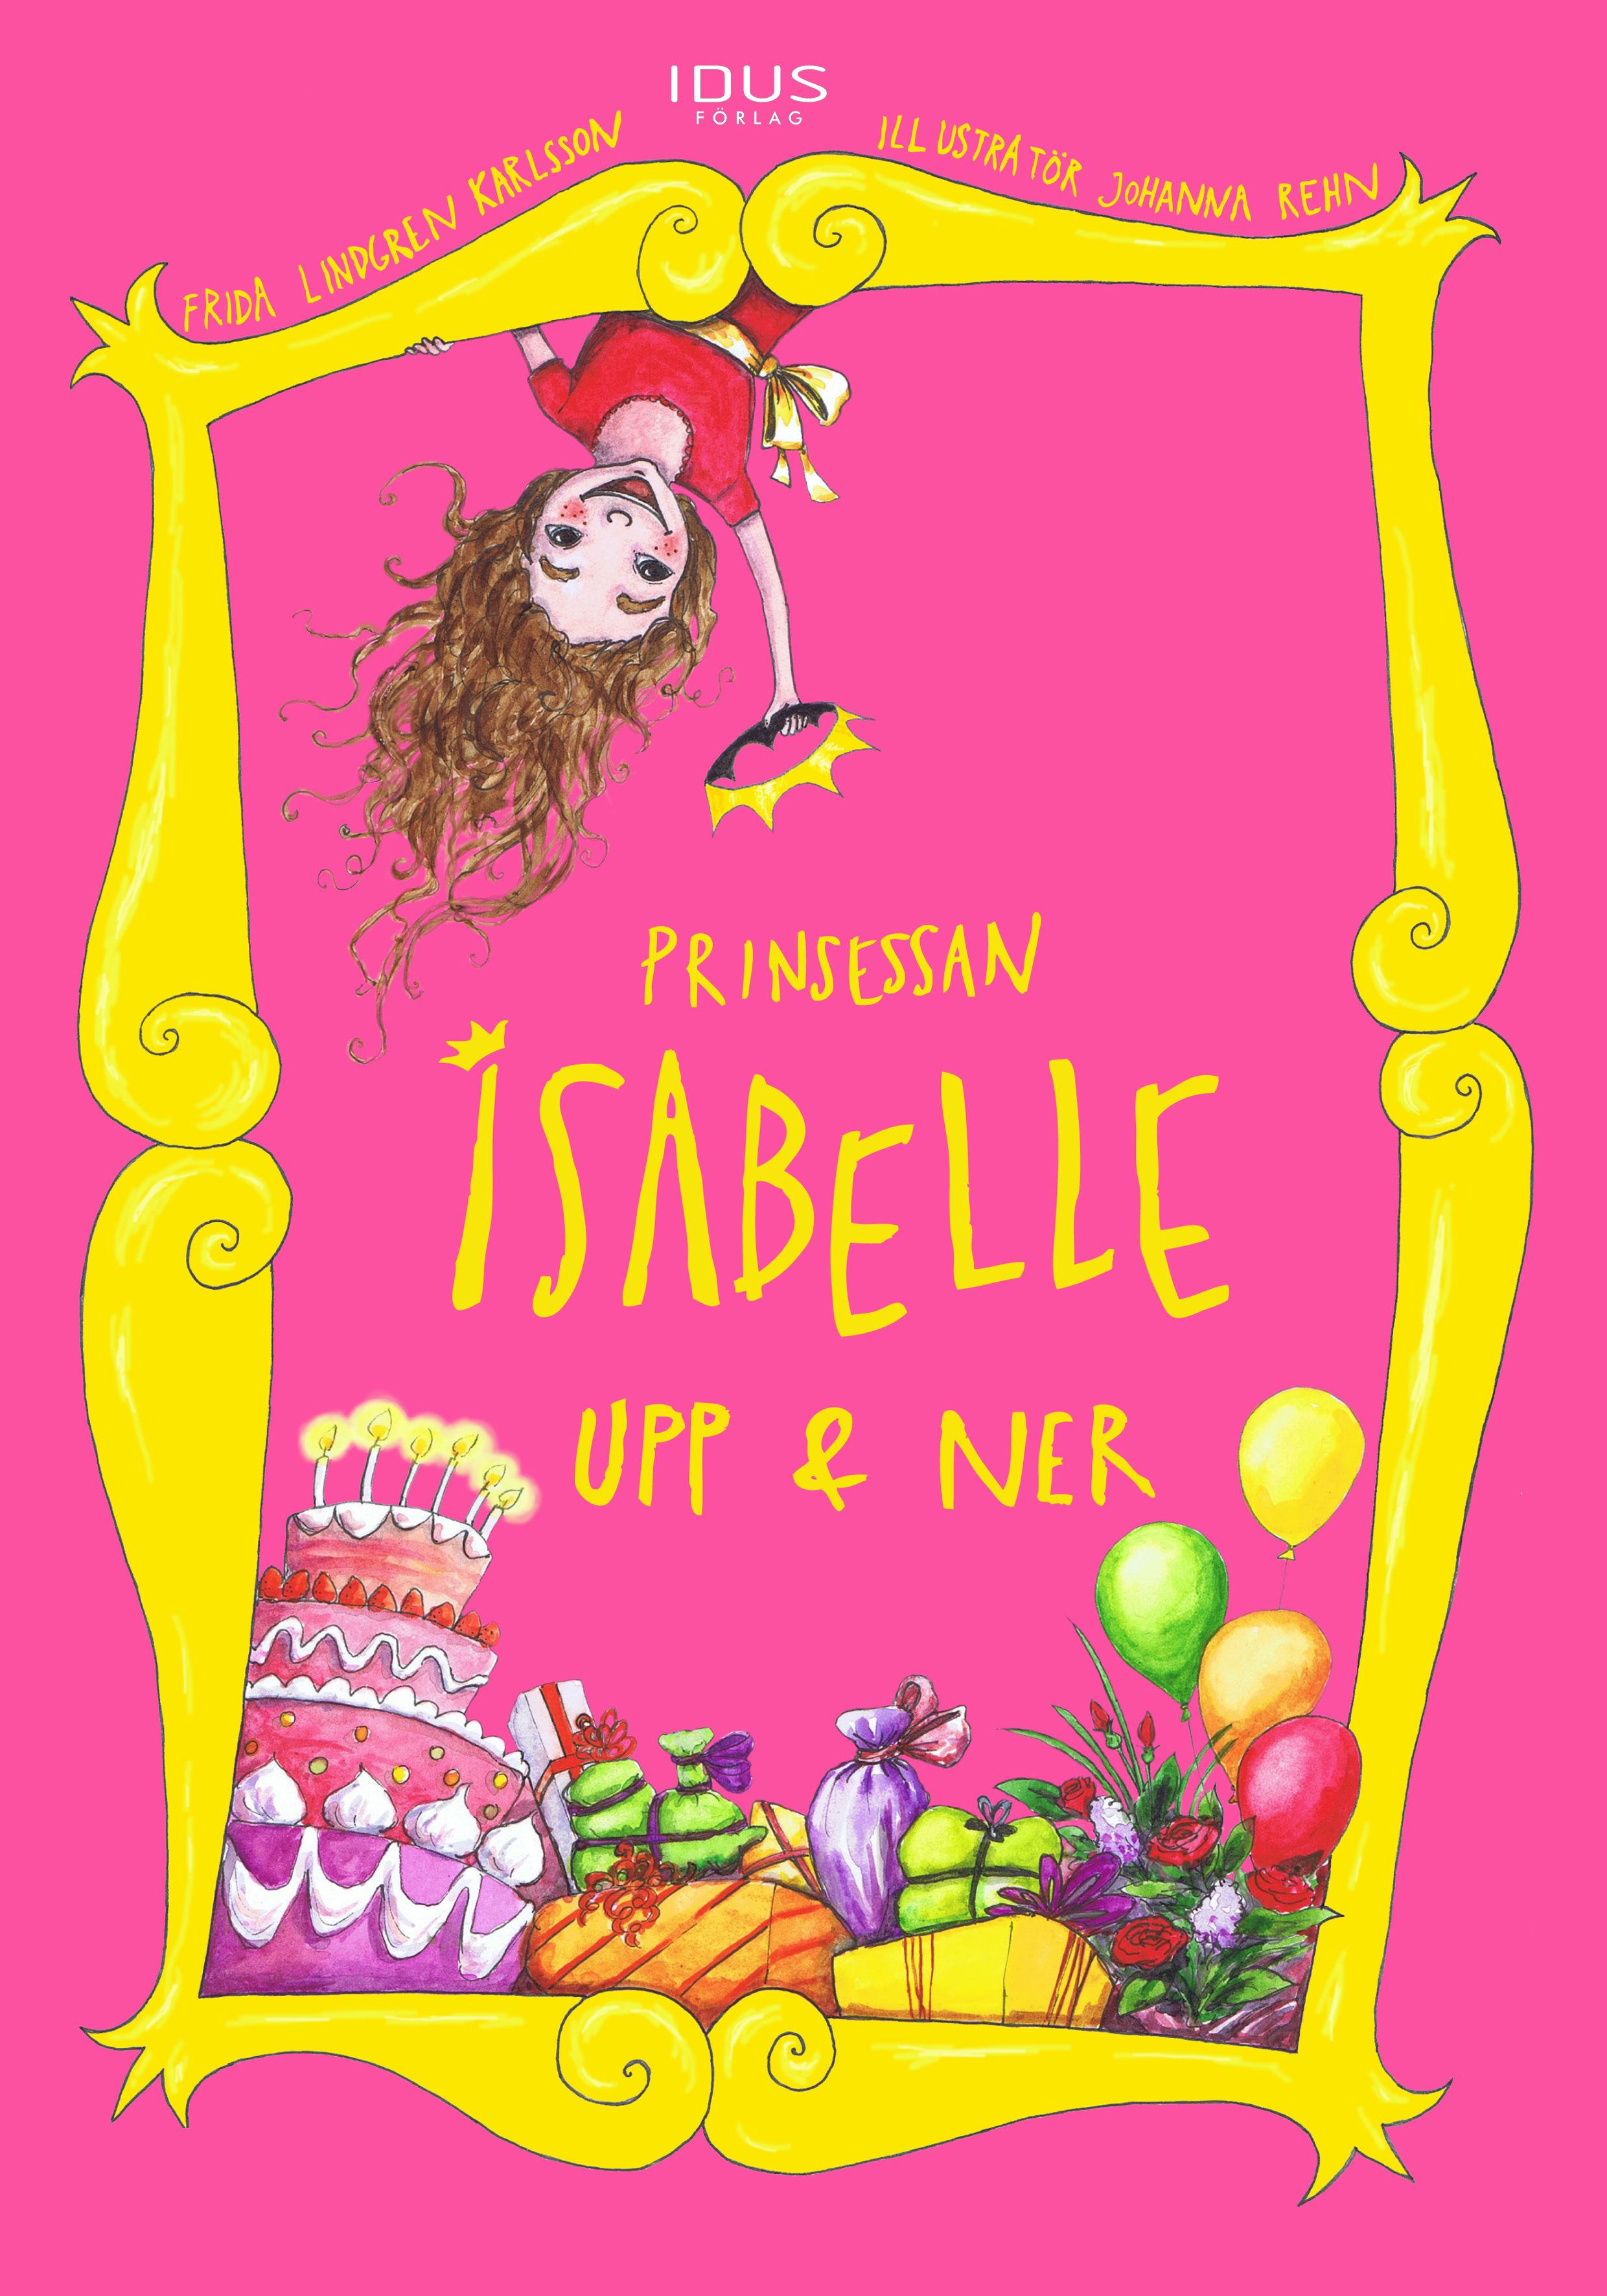 Prinsessan Isabelle Upp & Ner, e-bog af Frida Lindgren Karlsson